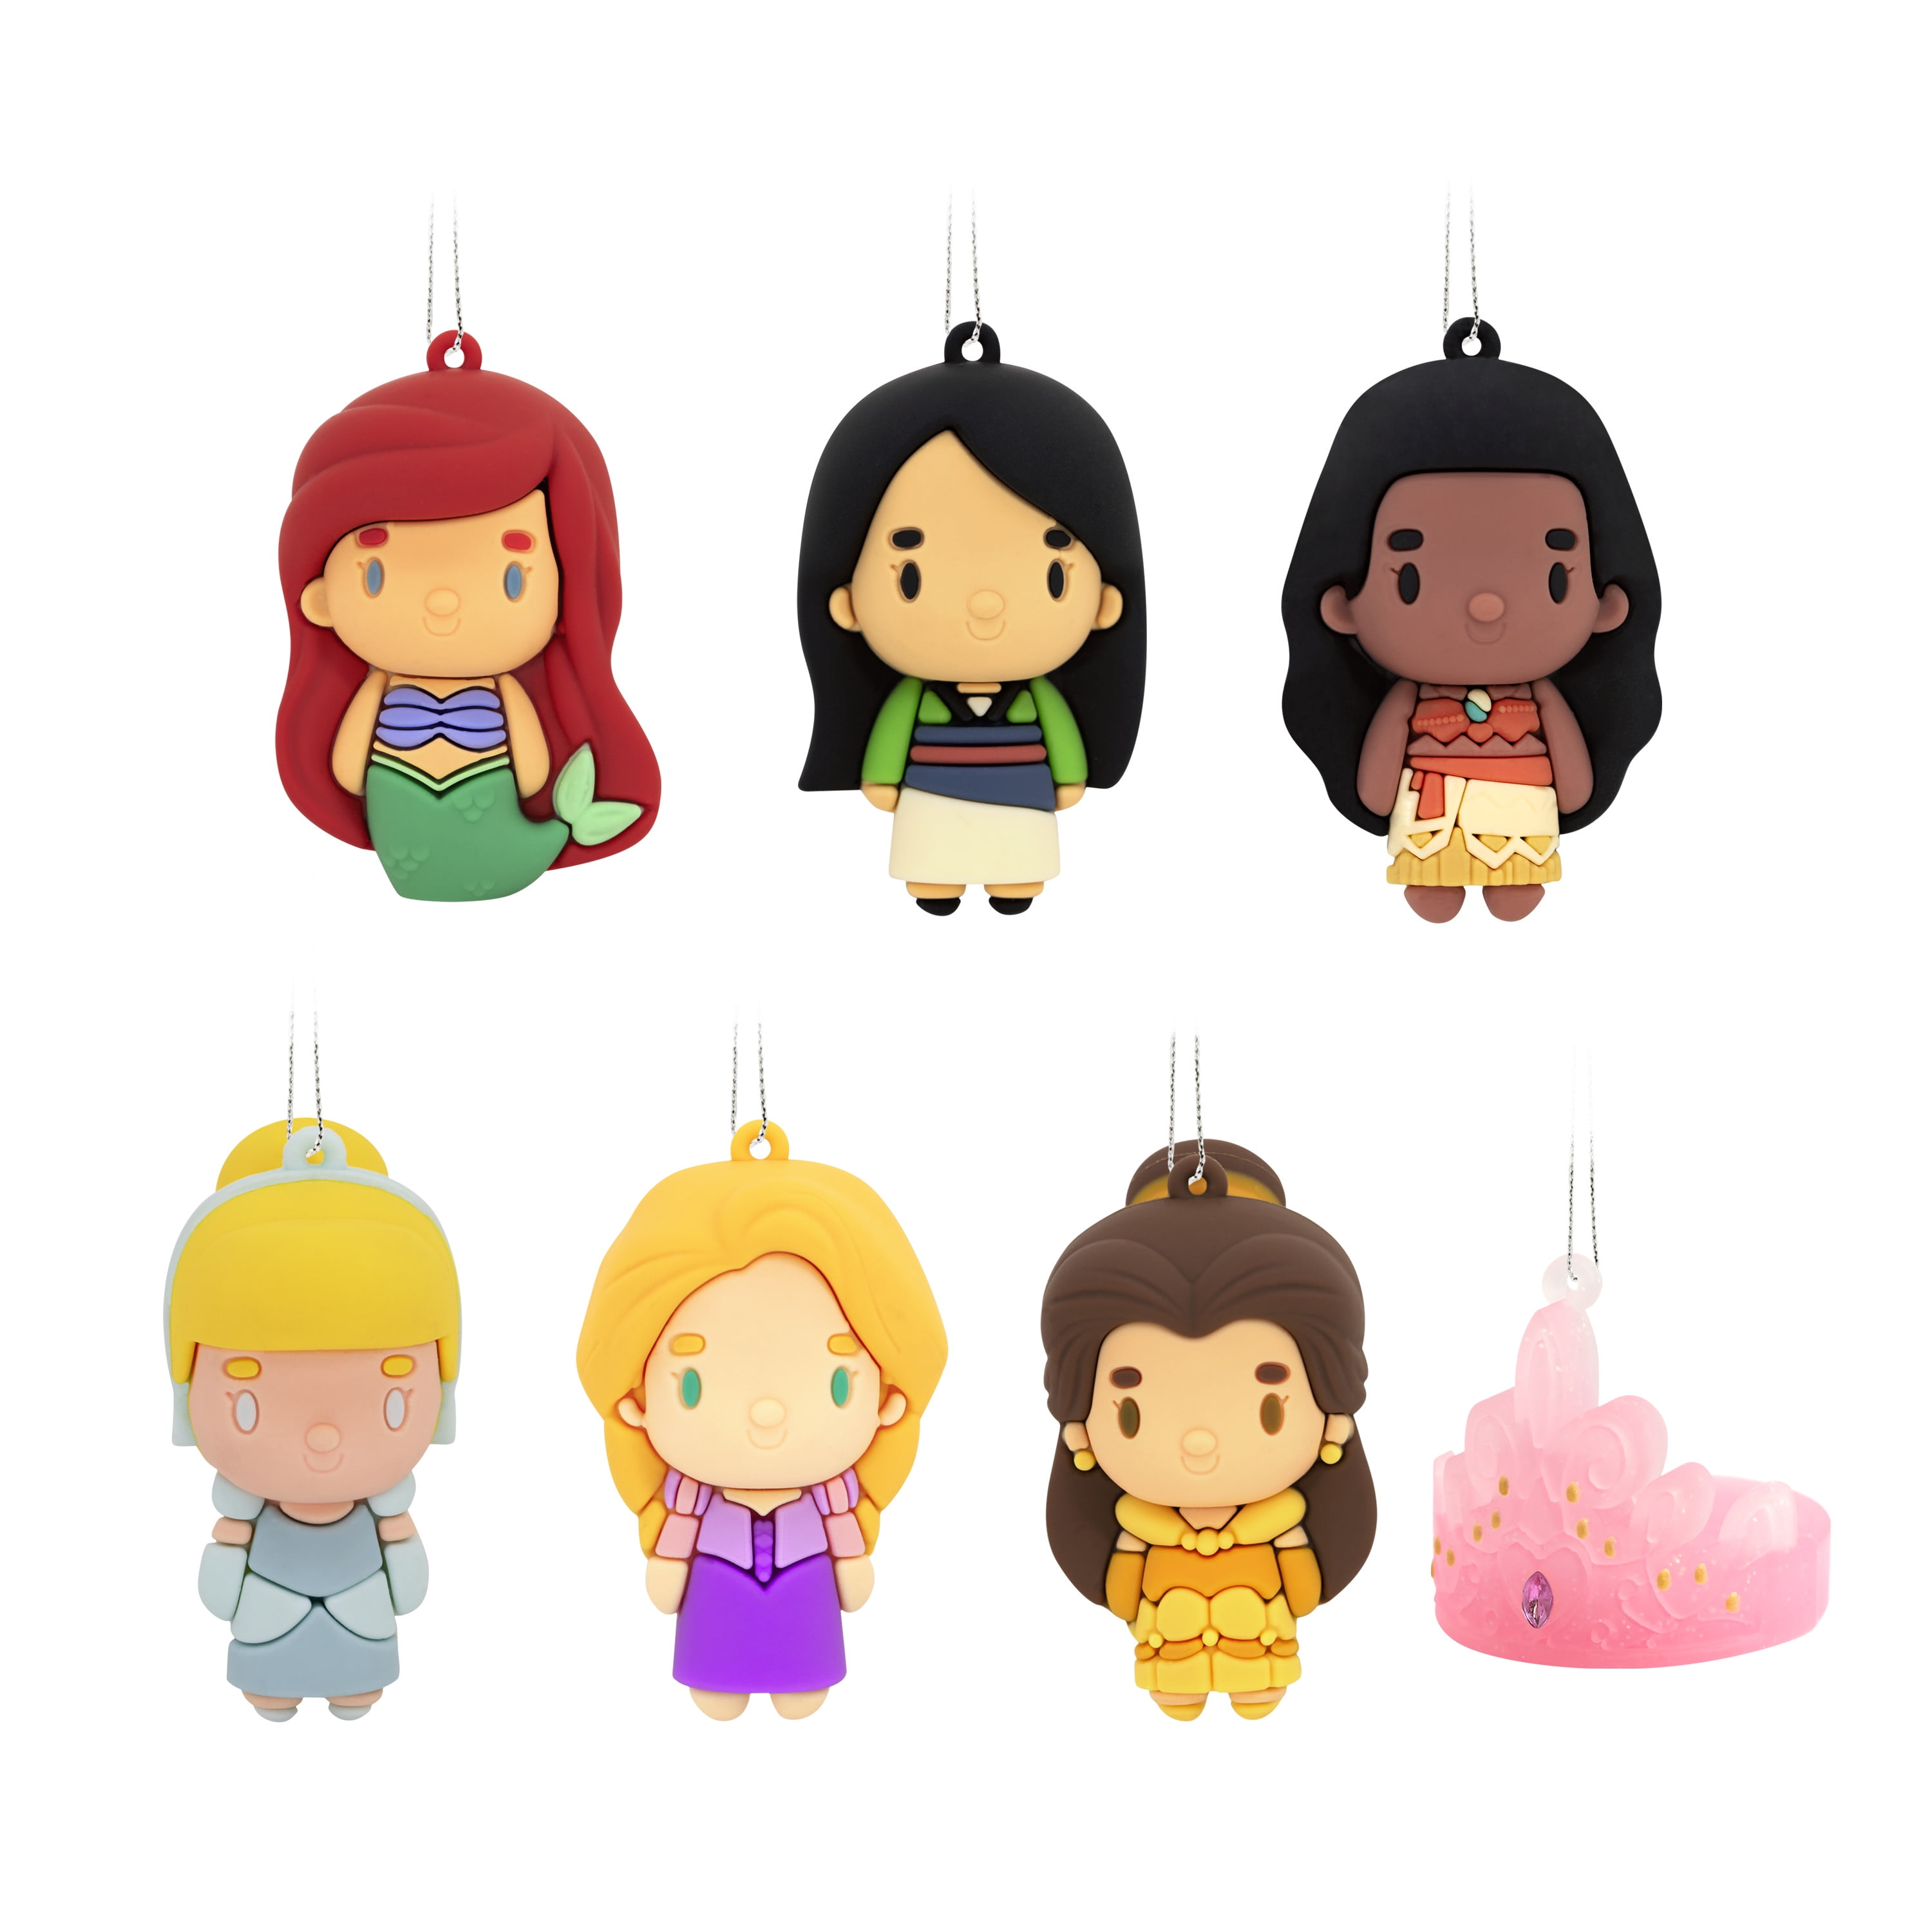 Disney Princess Figural Bag Clip Series 31 3 Inch Mulan